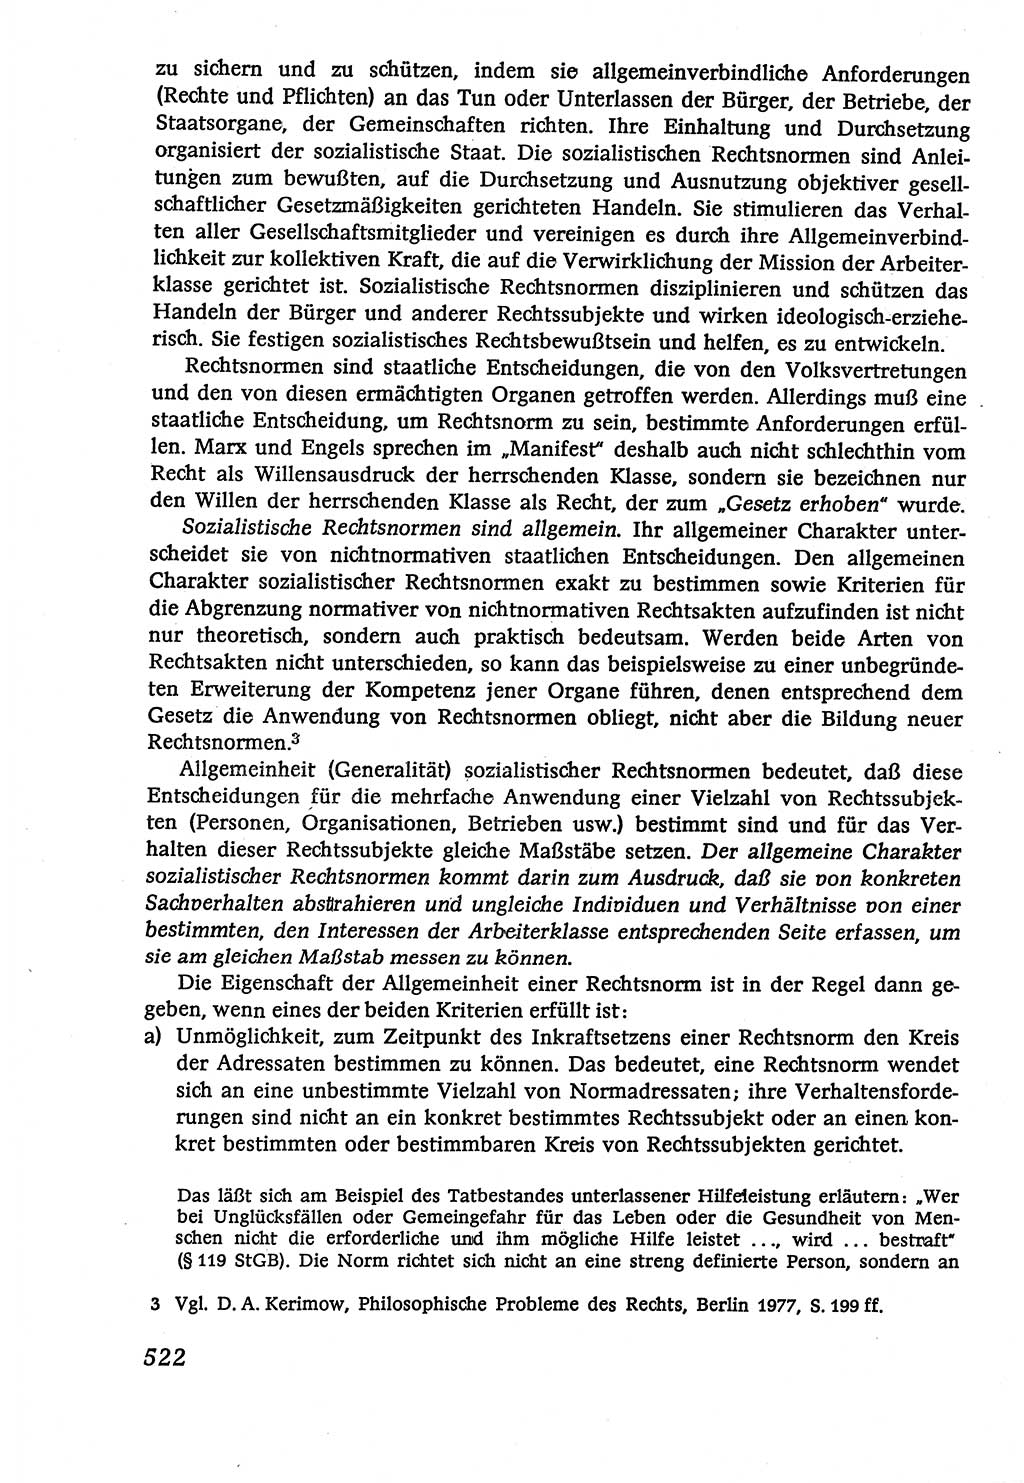 Marxistisch-leninistische (ML) Staats- und Rechtstheorie [Deutsche Demokratische Republik (DDR)], Lehrbuch 1980, Seite 522 (ML St.-R.-Th. DDR Lb. 1980, S. 522)